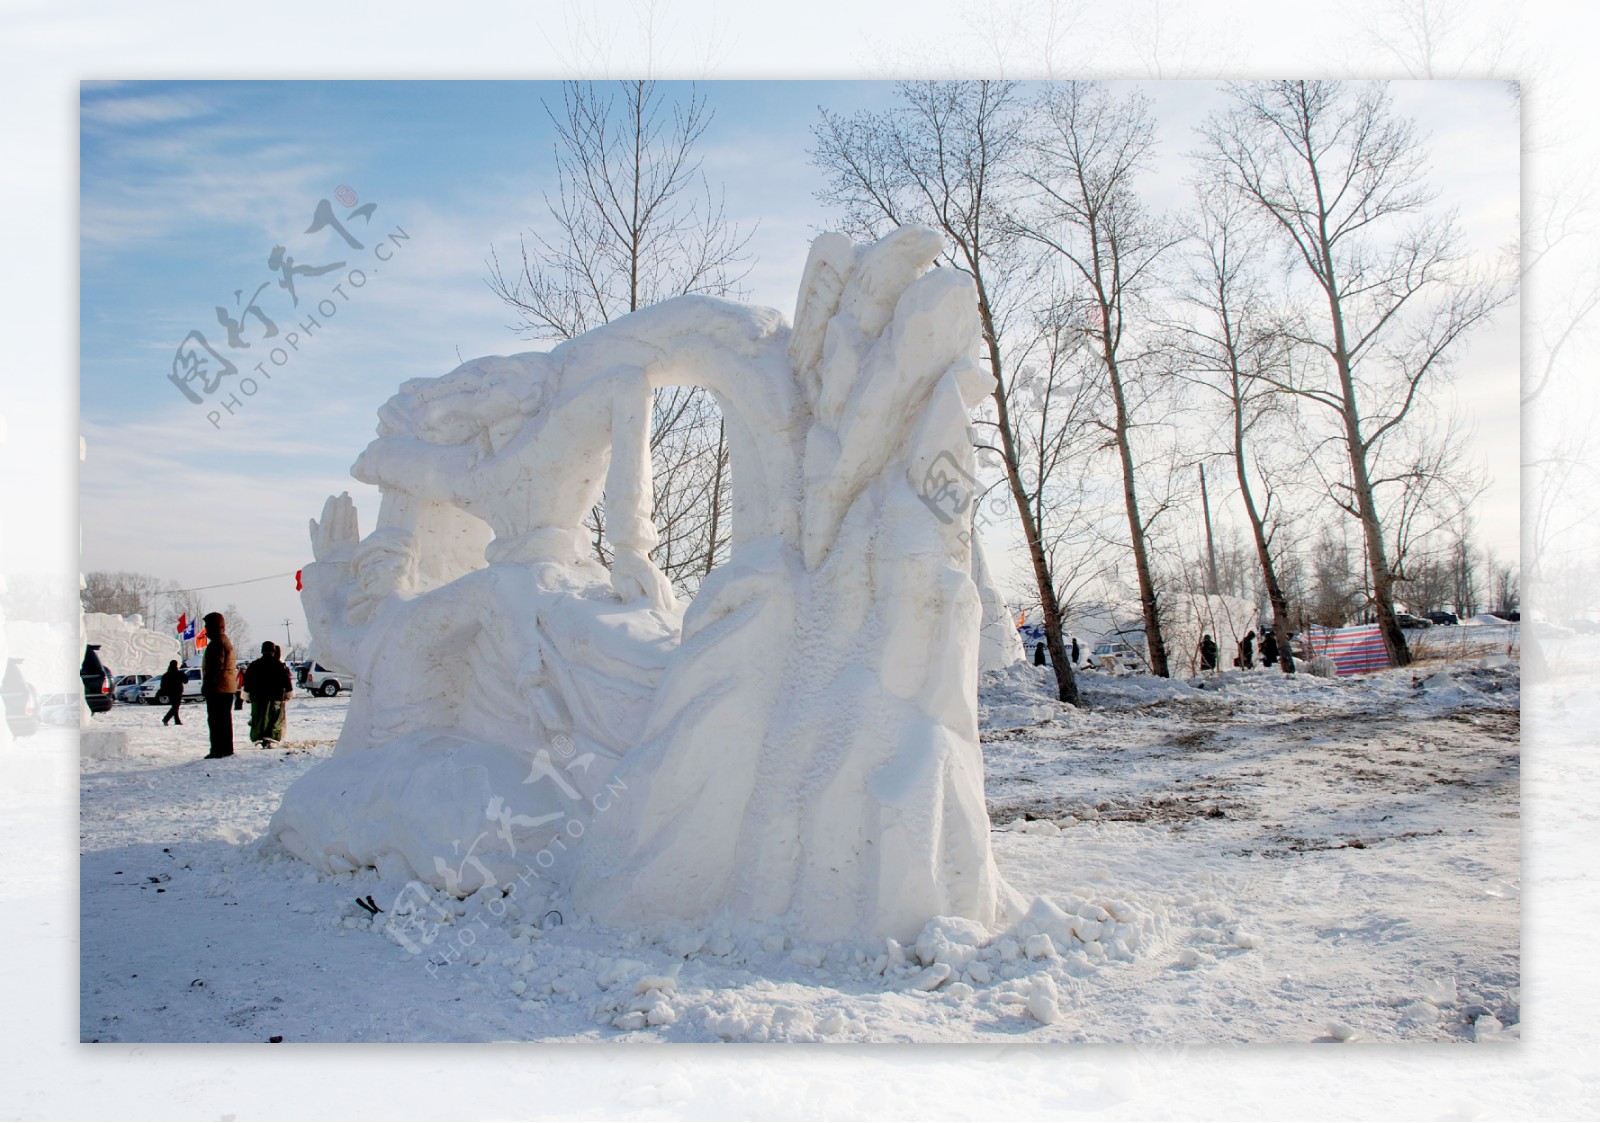 那达慕大会上的雪雕图片